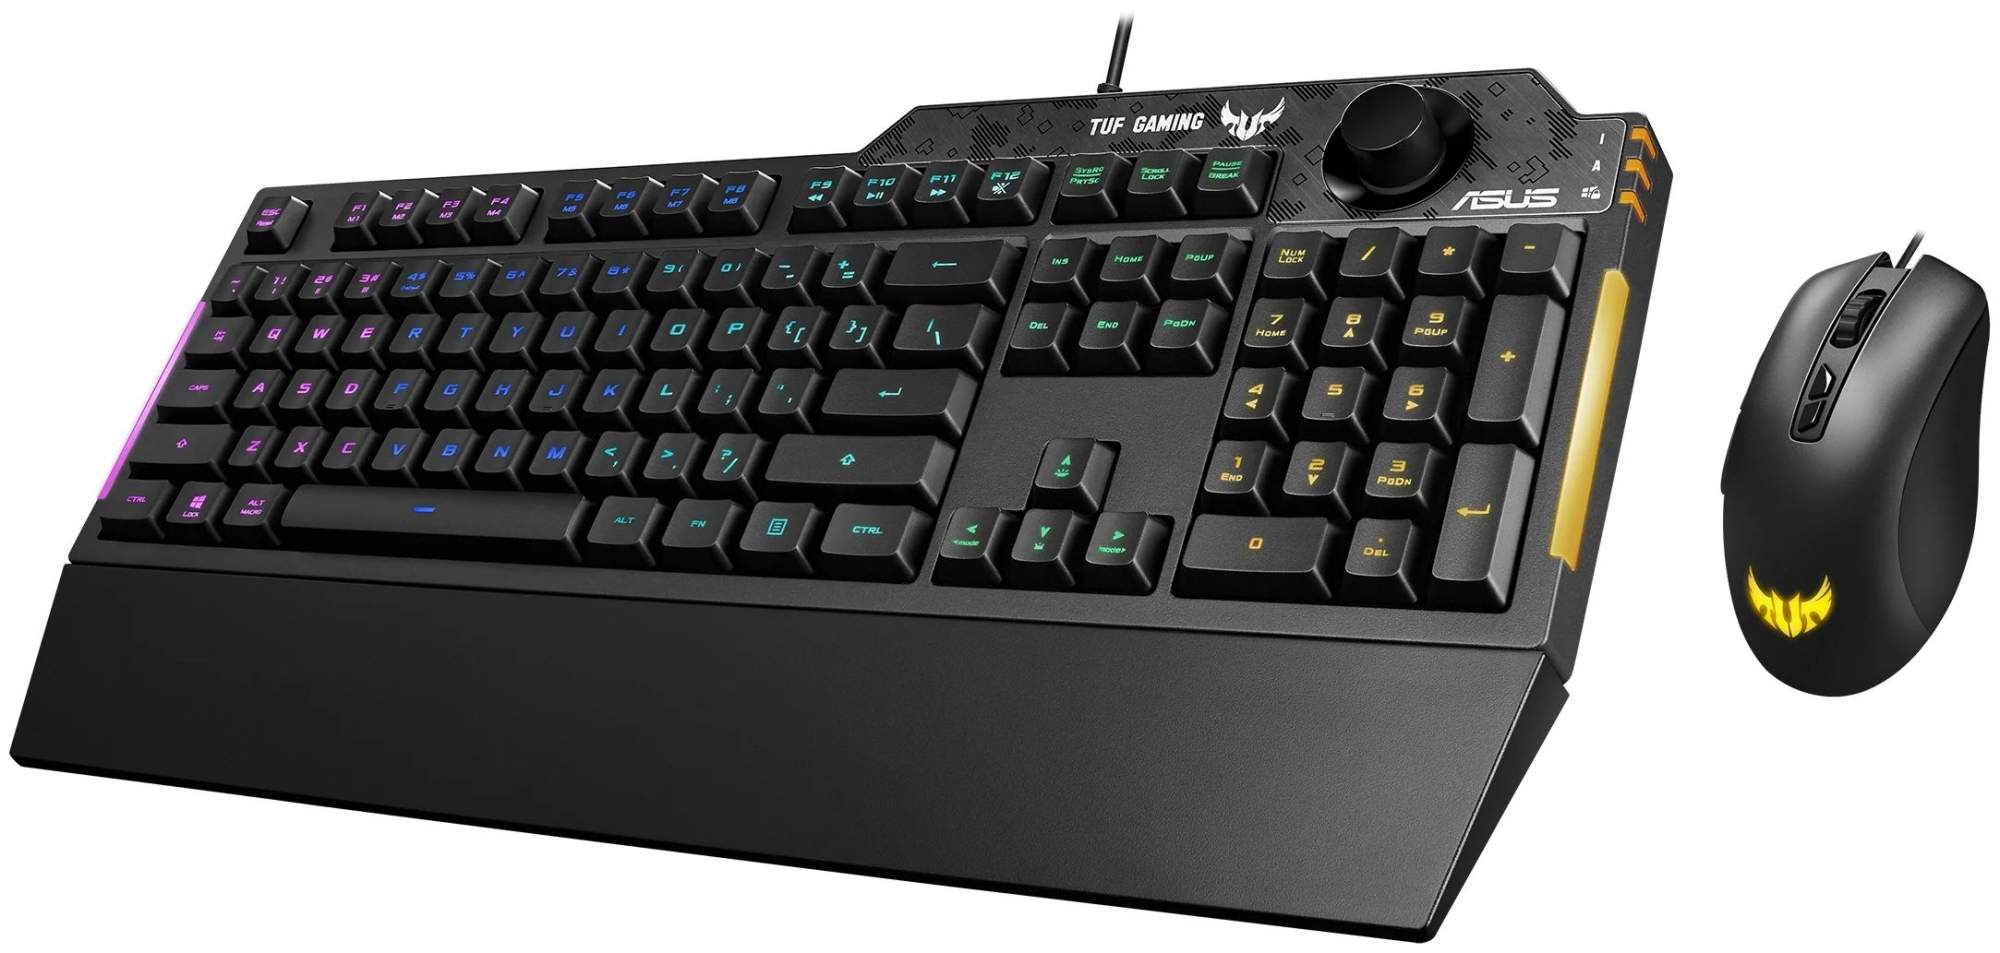 Проводная игровая клавиатура ASUS TUF Gaming Combo K1 & M3 Black (90MP02A0-BCRA00) – купить в Москве, цены в интернет-магазинах на Мегамаркет